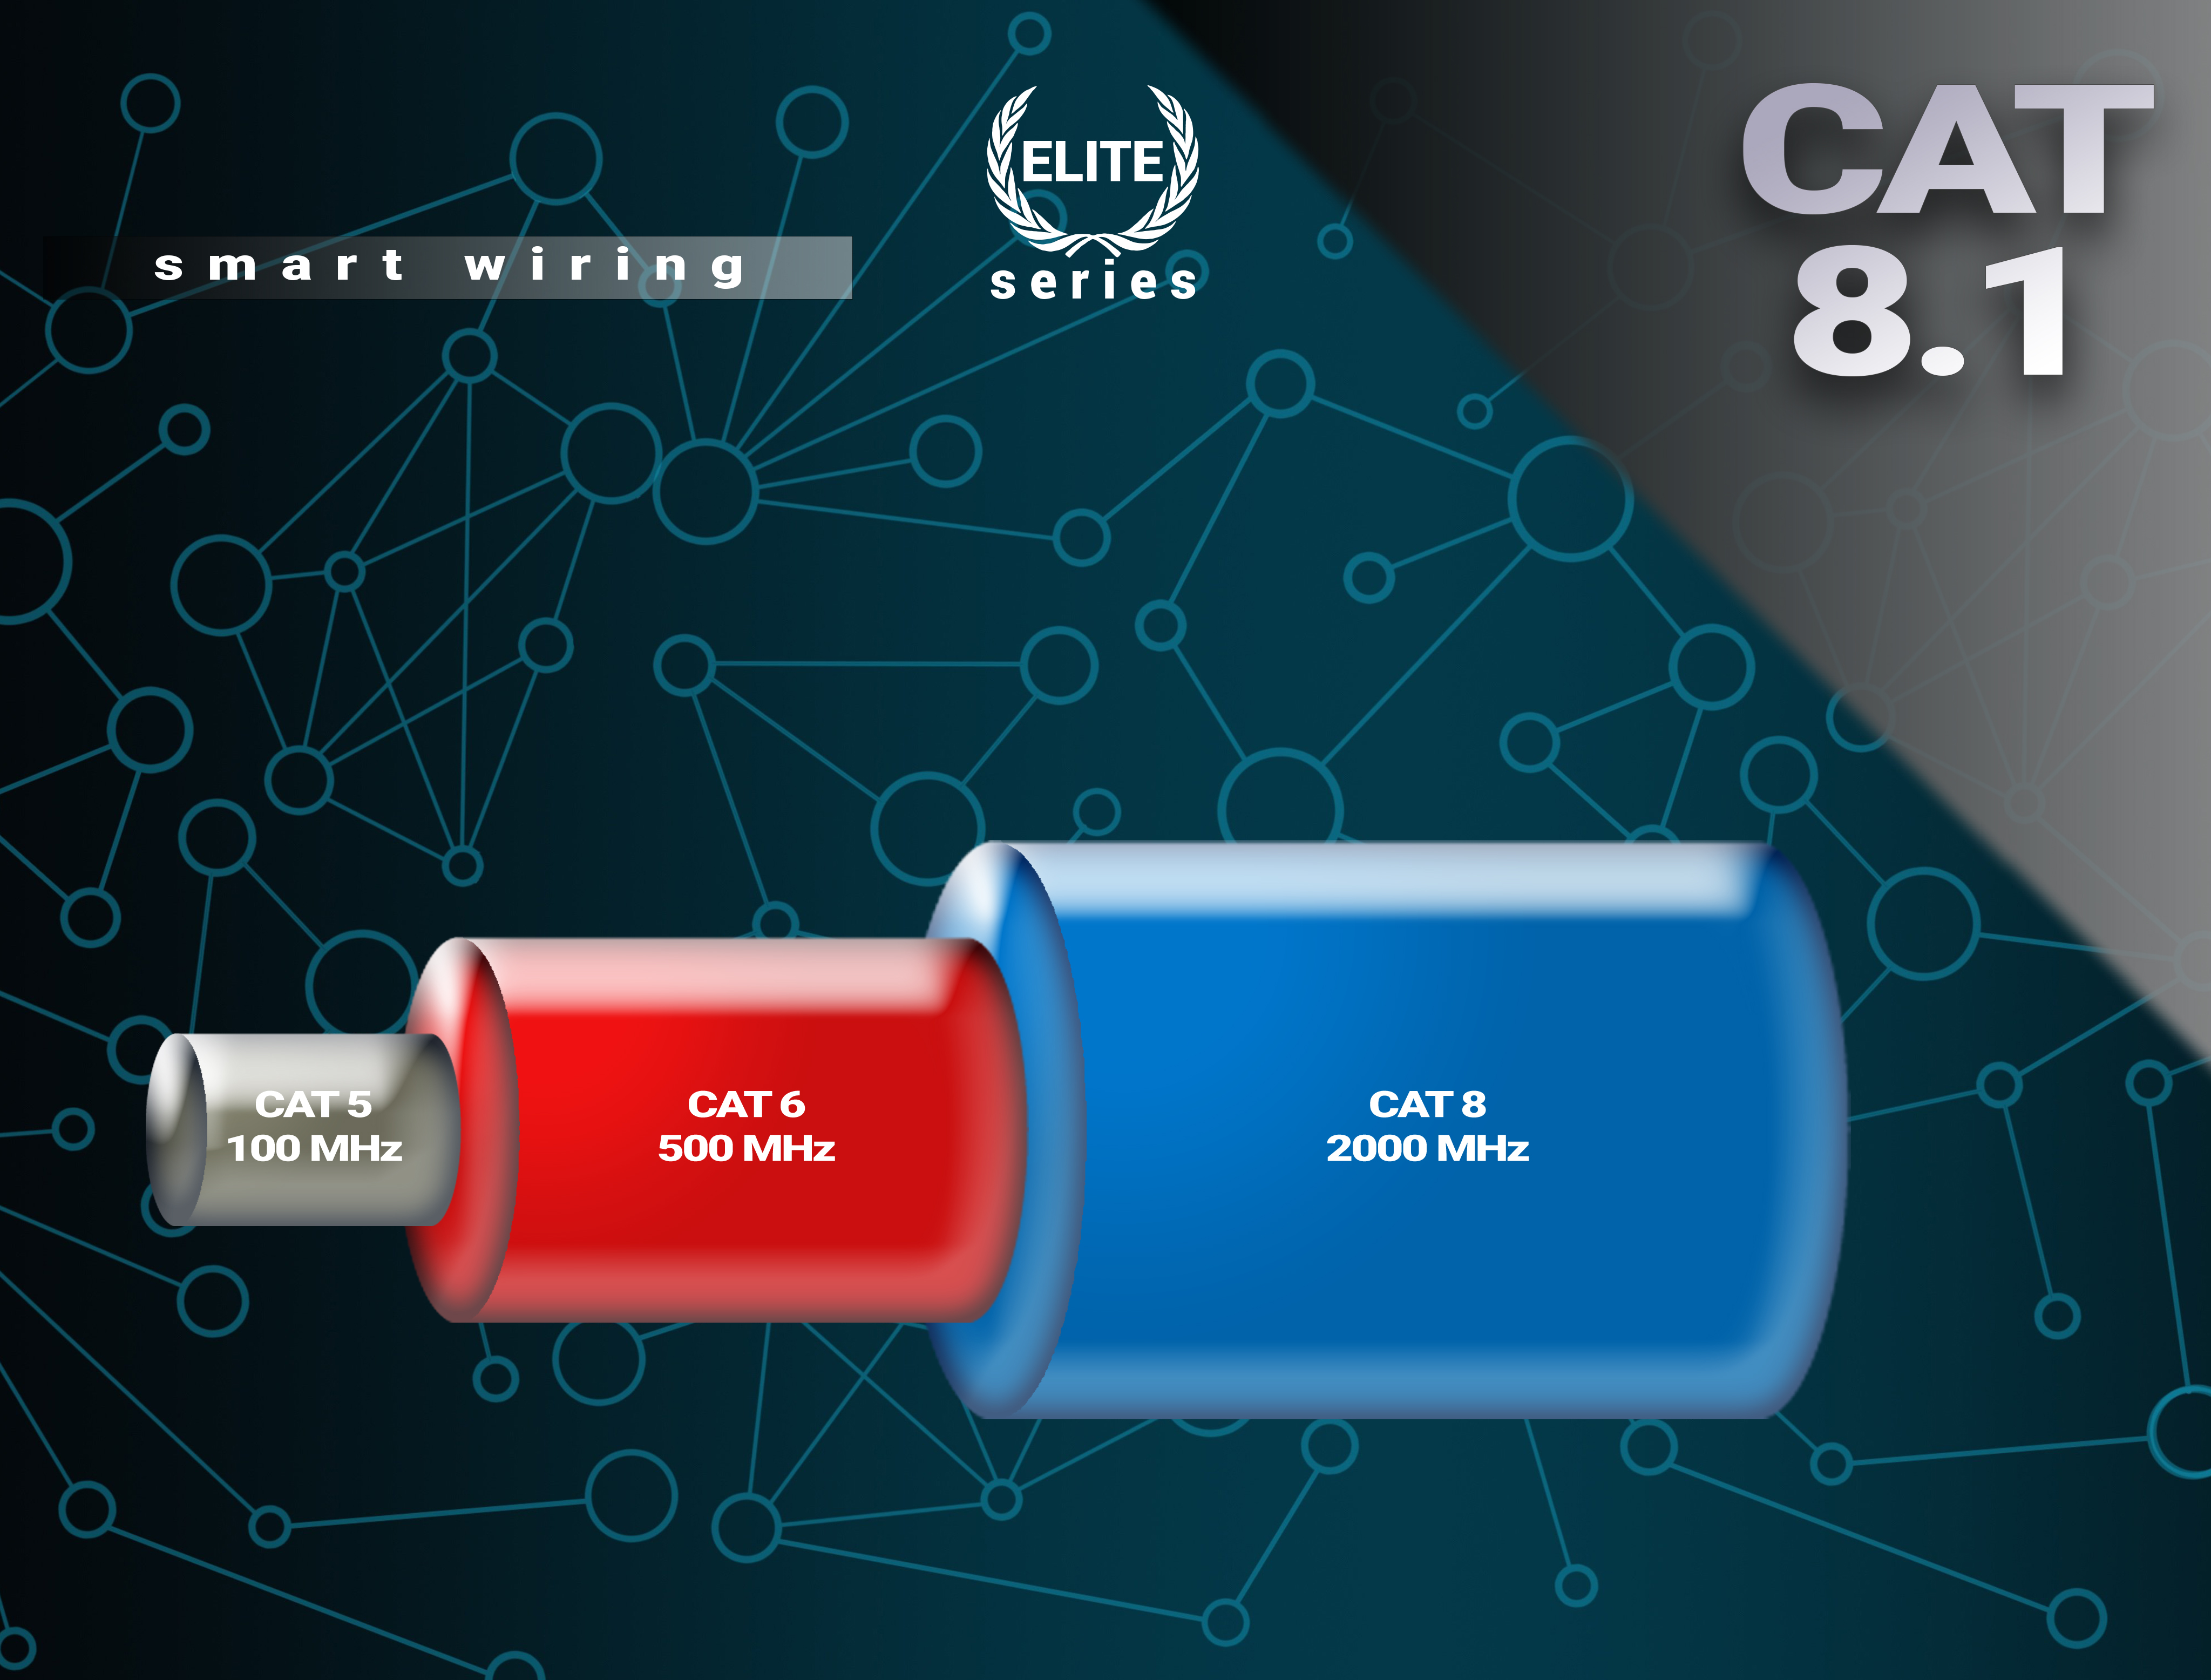 Premium 1 BIVANI Kabel Netzwerkkabel, Gbps 8.1 LAN CAT m Elite-Series, 40 -